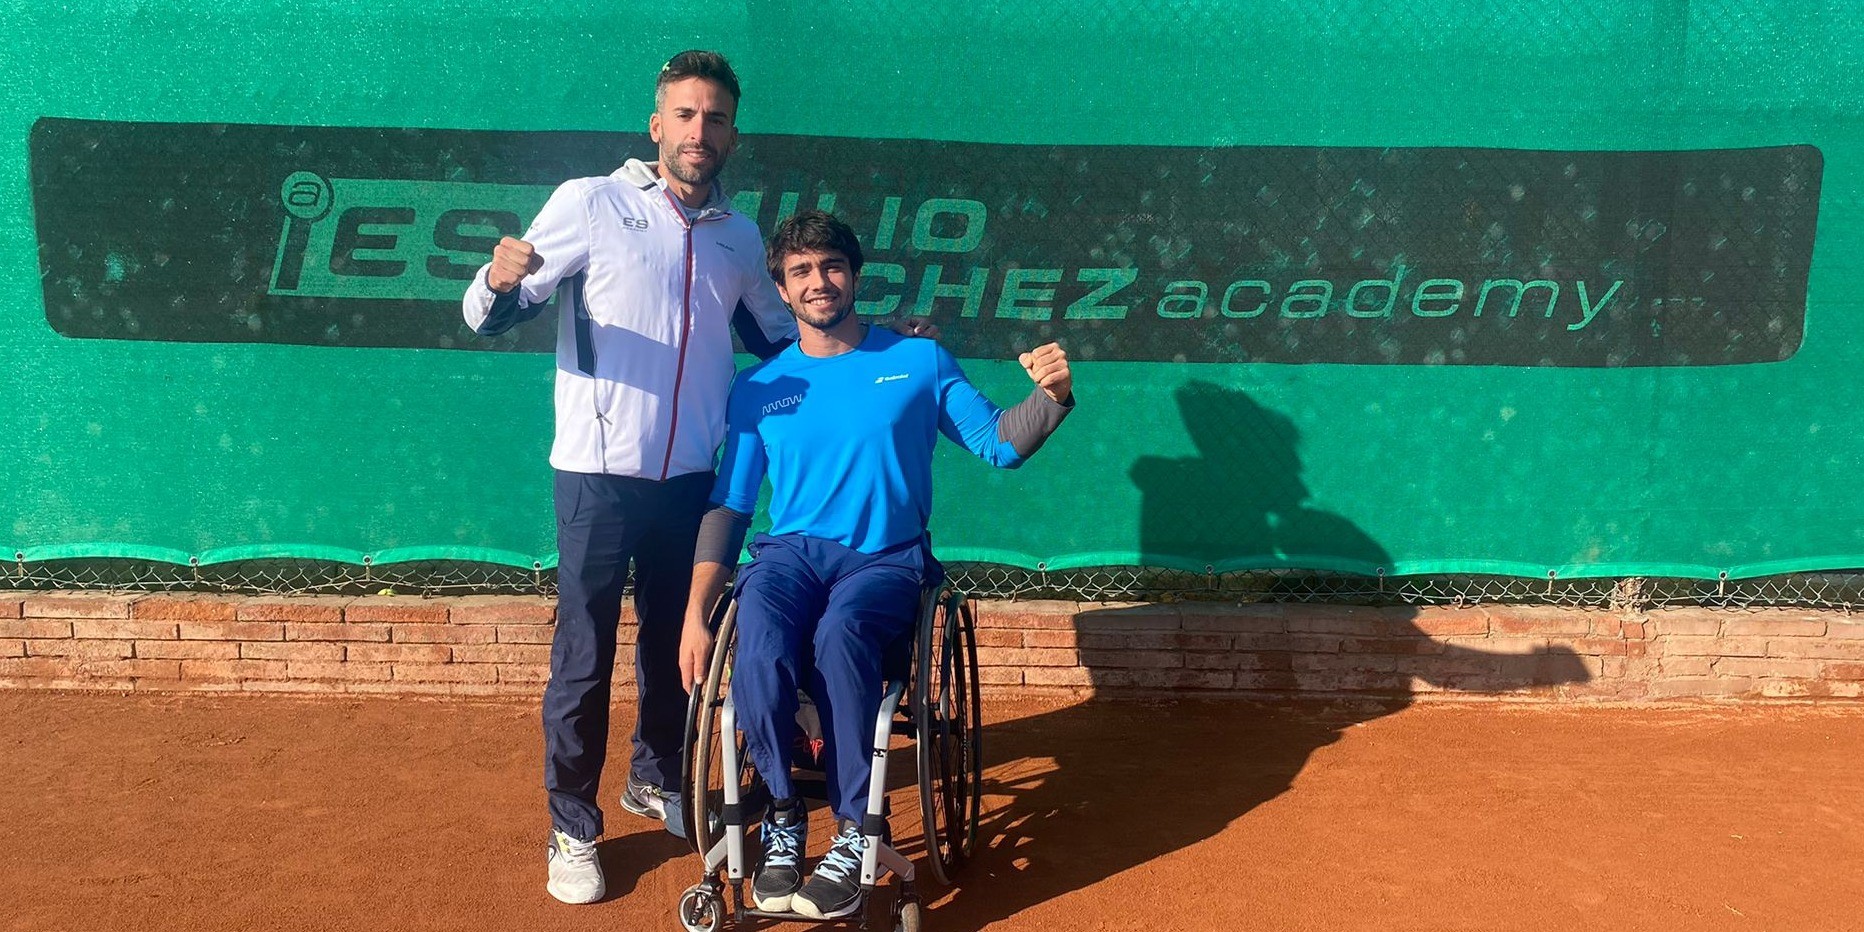 Daniel Caverzaschi, jugador de Emilio Sánchez Academy, en el top ten mundial en Tenis silla de ruedas.